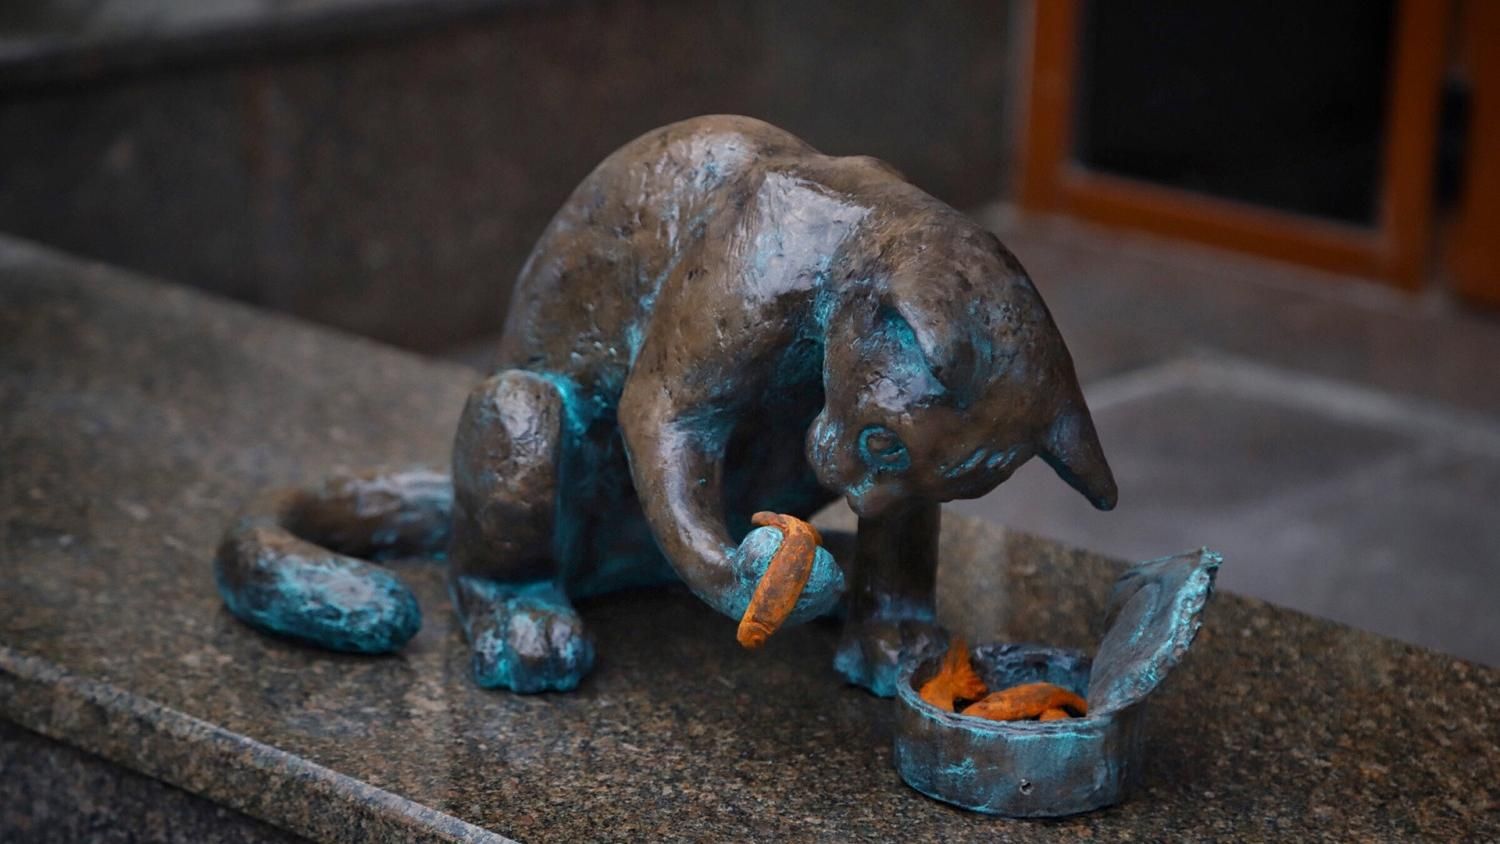 Одессе на Новый год подарили еще одного кота: животное ест кильку в томате – фото скульптуры